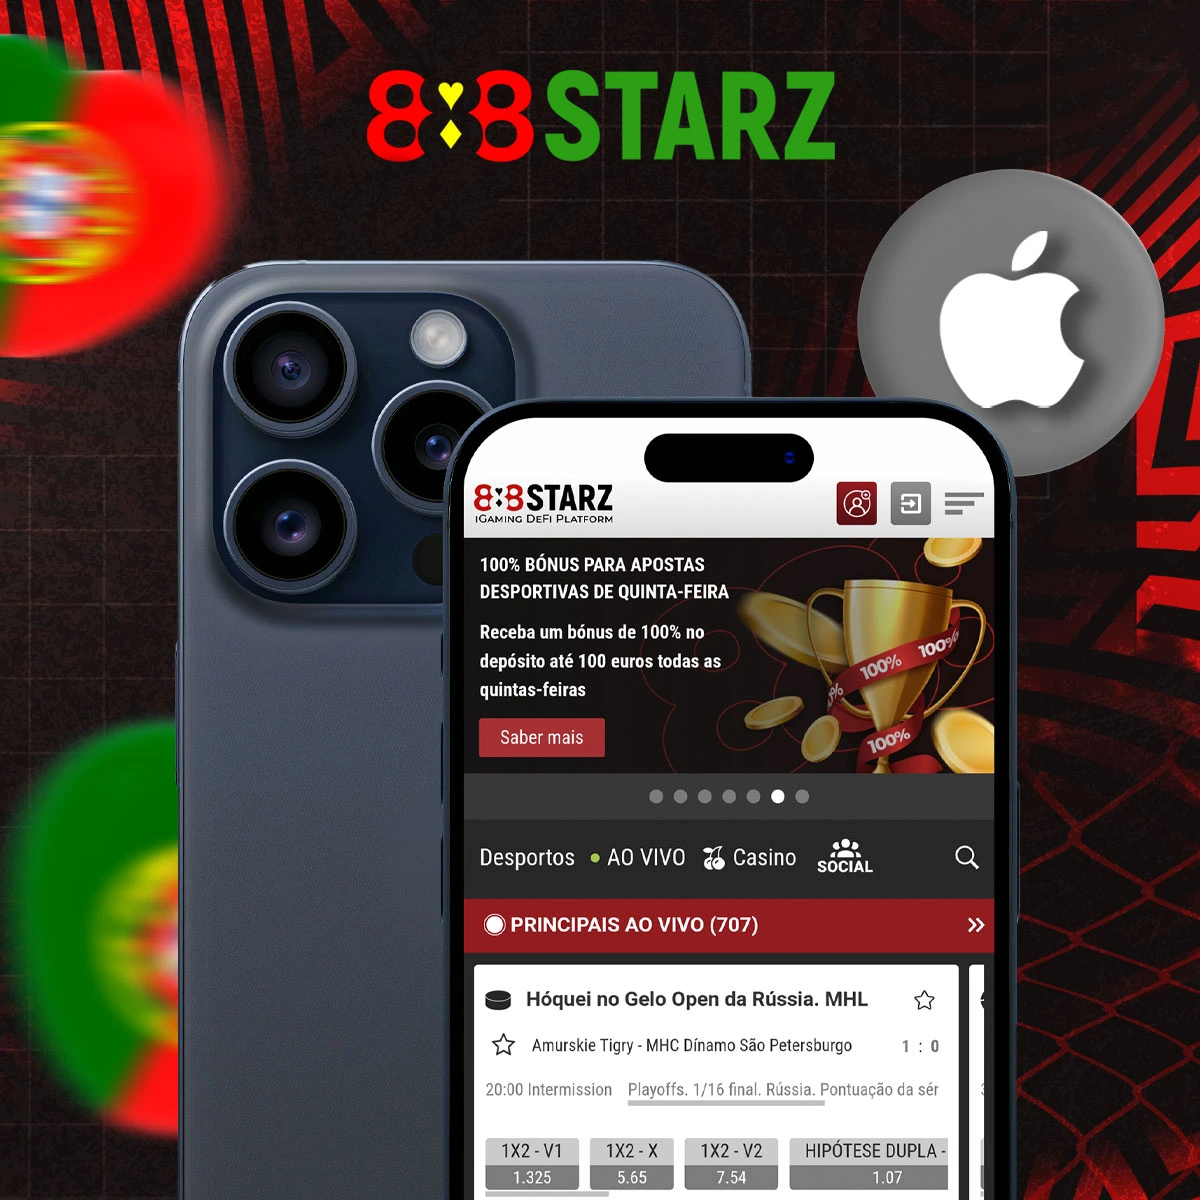 Como é que instalo a aplicação móvel 888Starz no iOS?